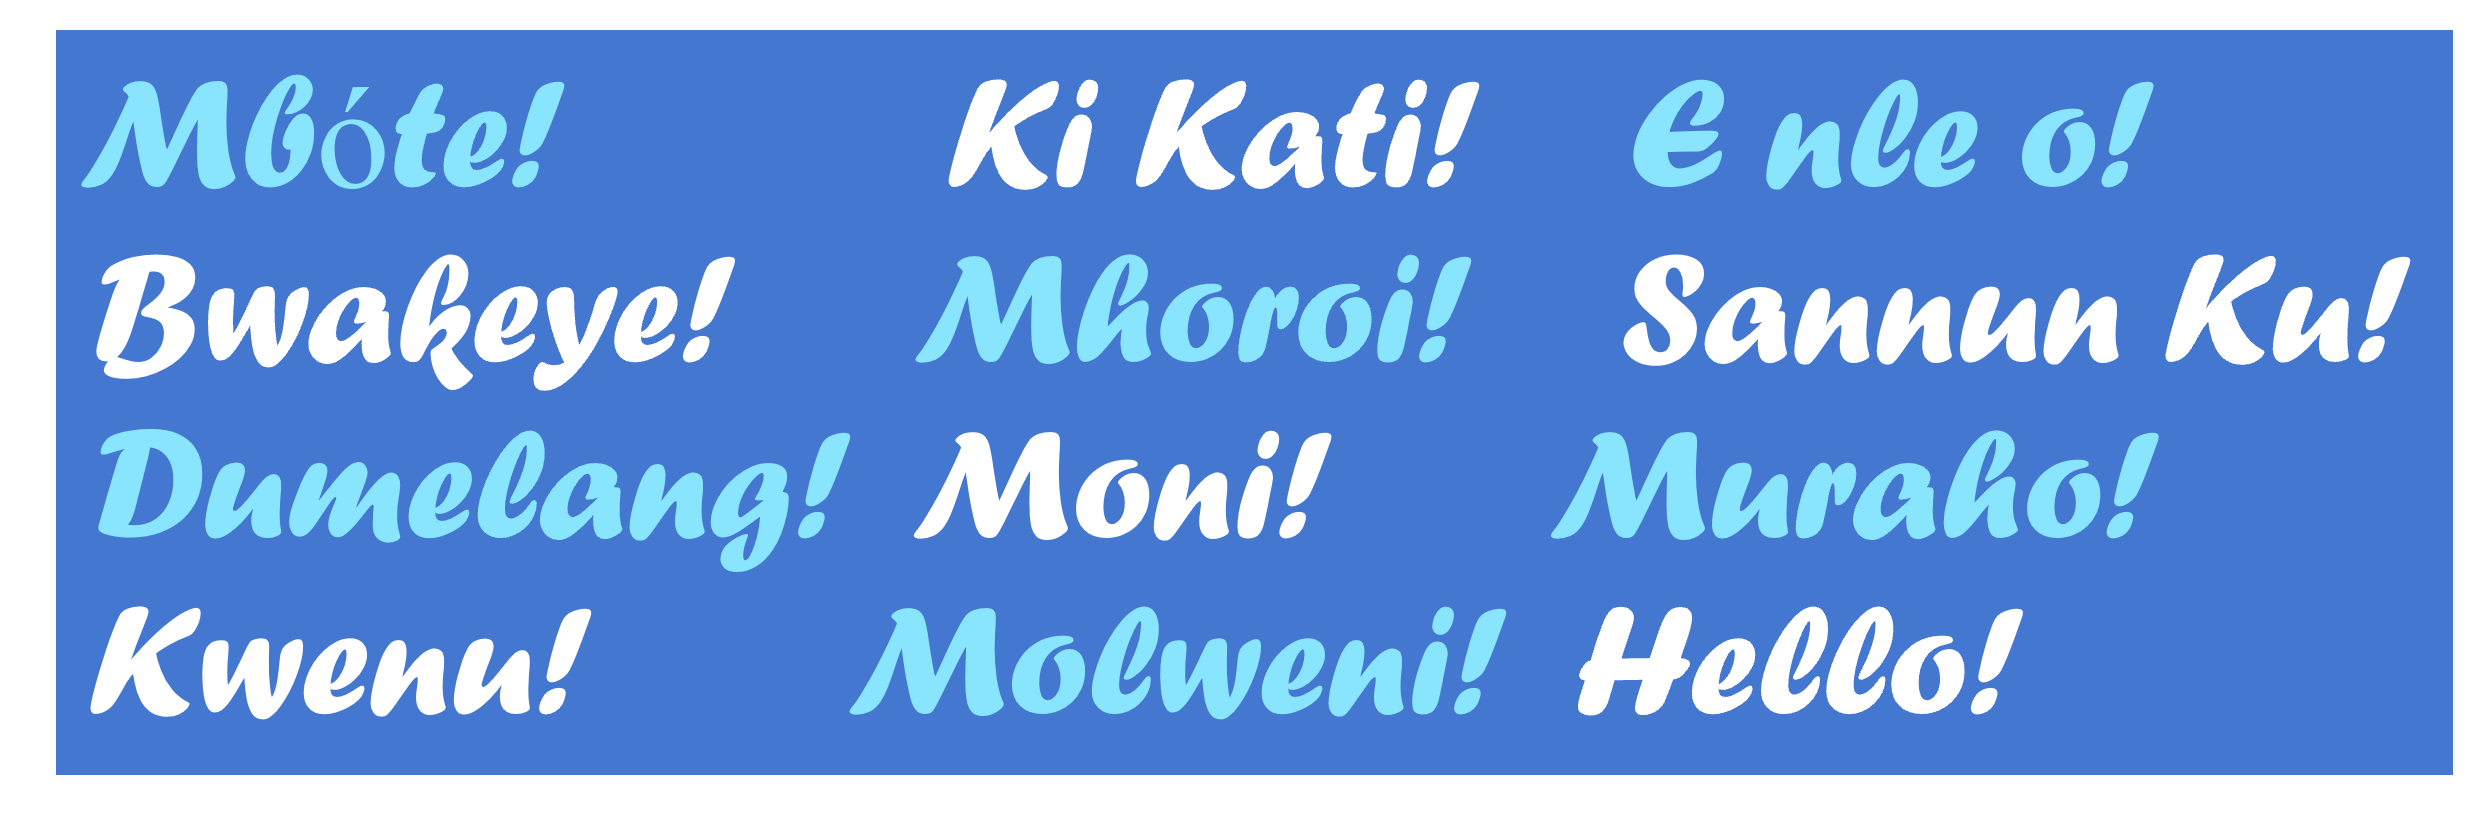 A imagem mostra a frase em inglês "Hello" e sua tradução para o conjunto de idiomas africanos descritos nesta postagem do blog.